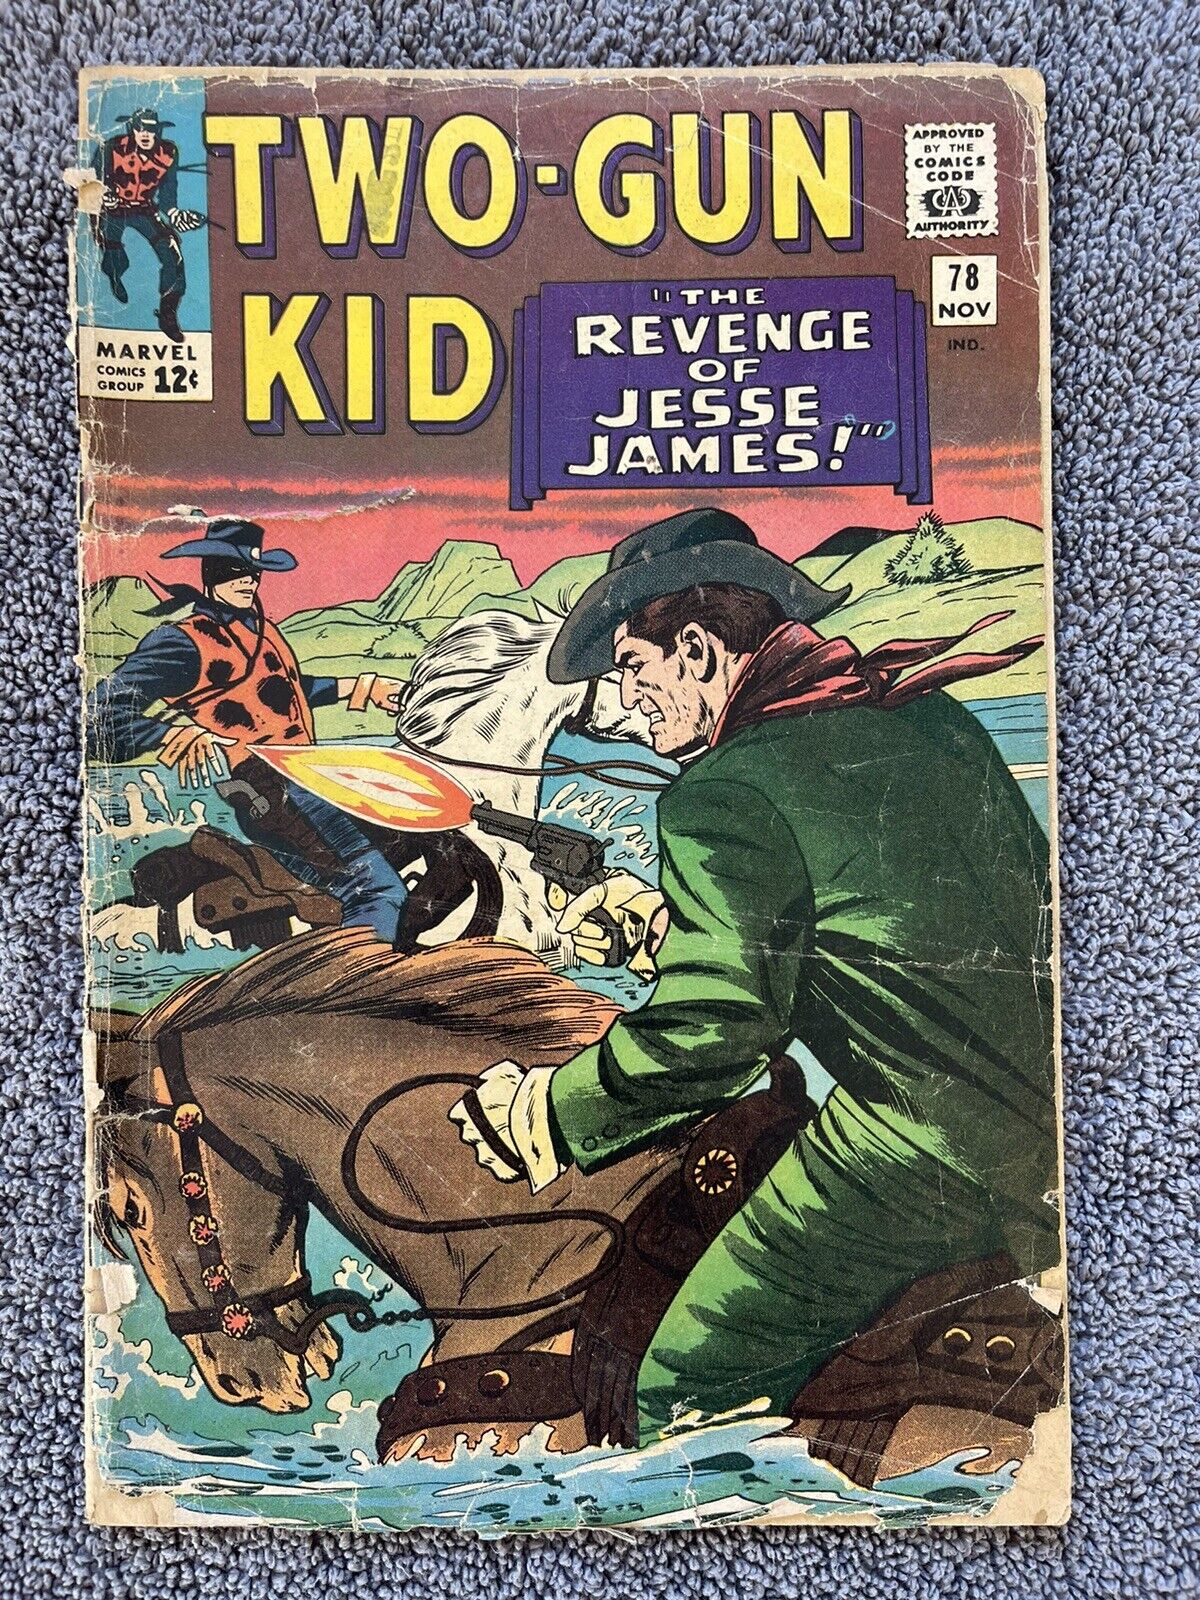 Two-Gun Kid #78 (Marvel, 1965) Revenge of Jesse James